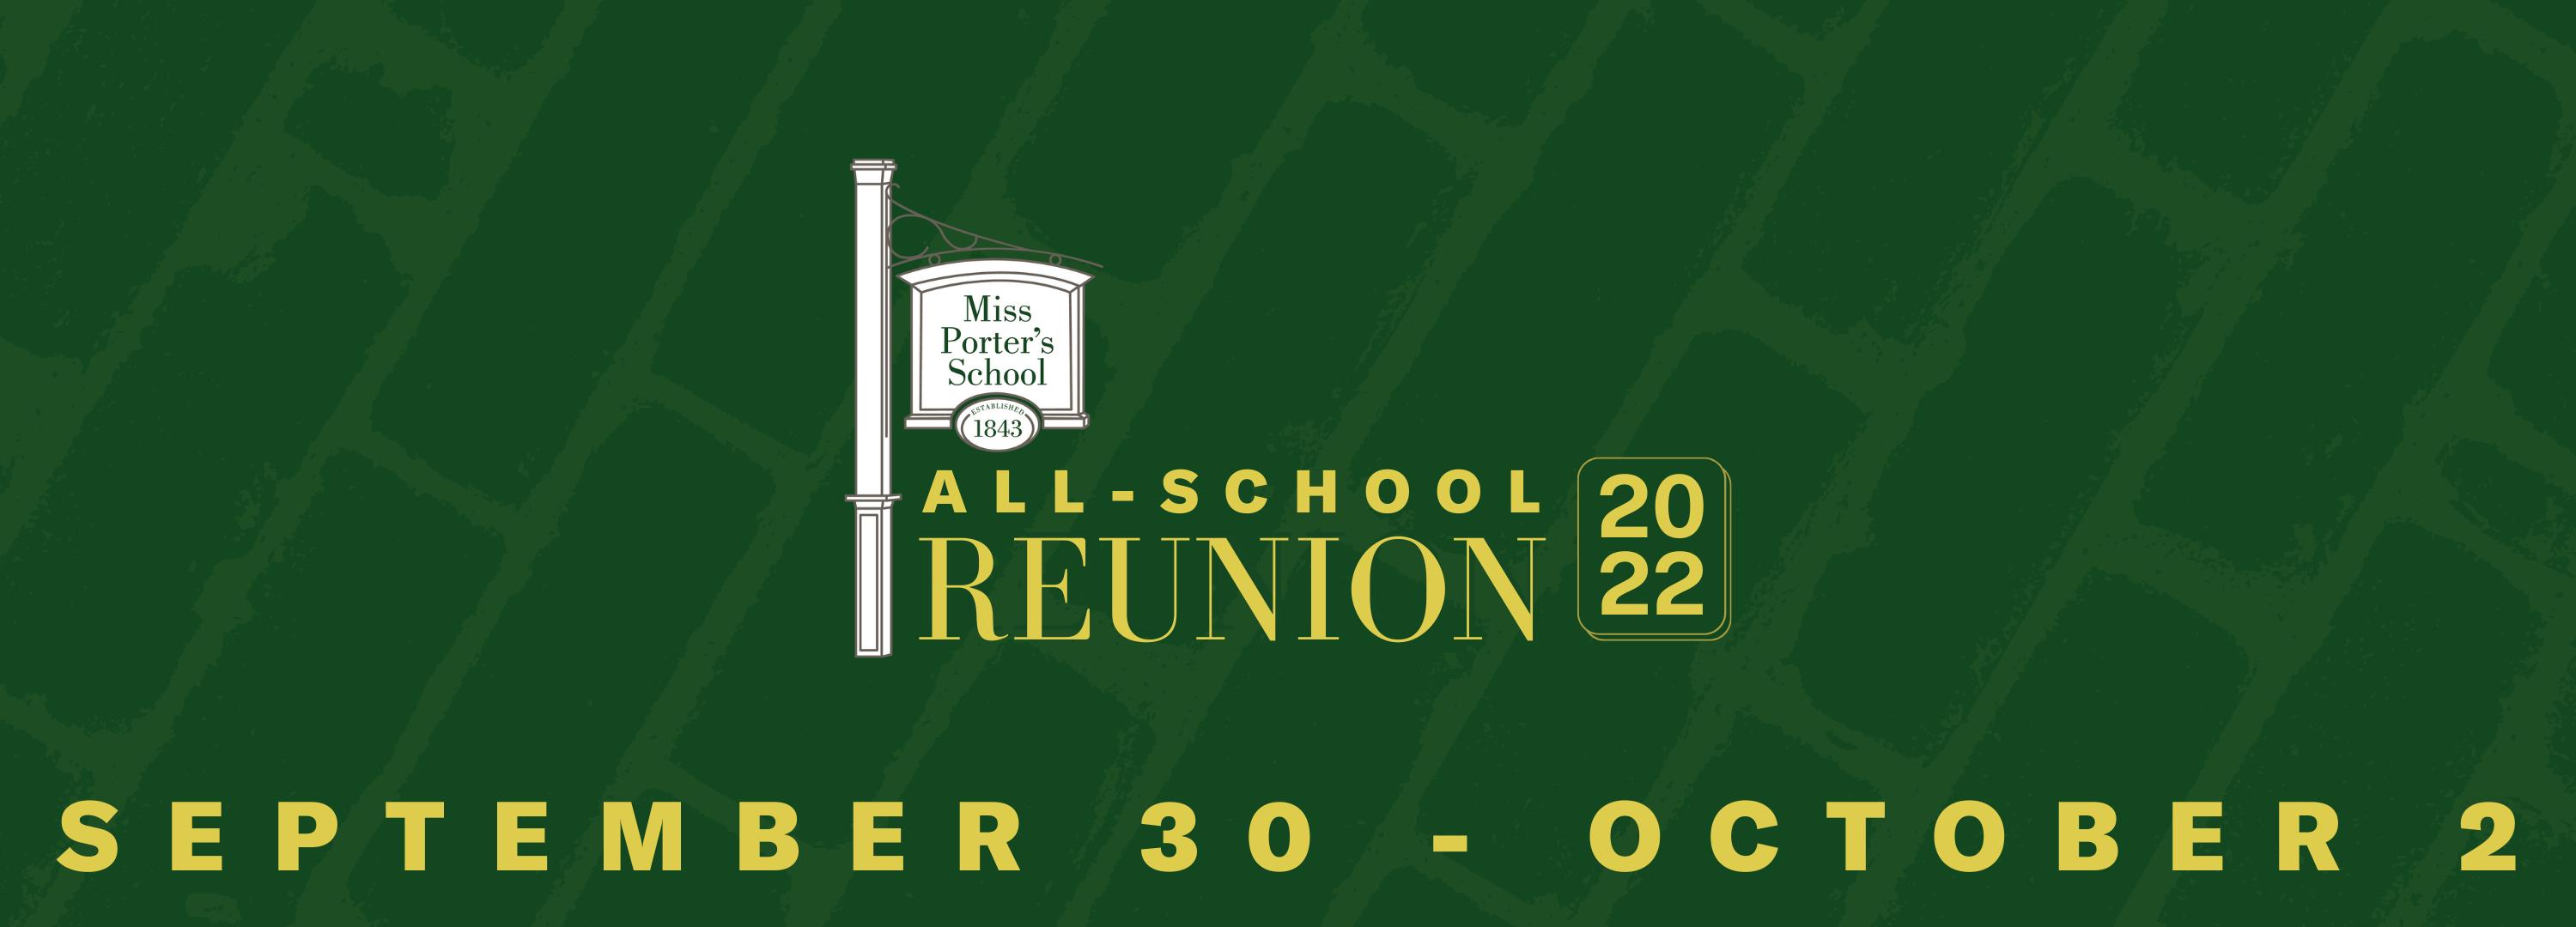 All-School Reunion registration header